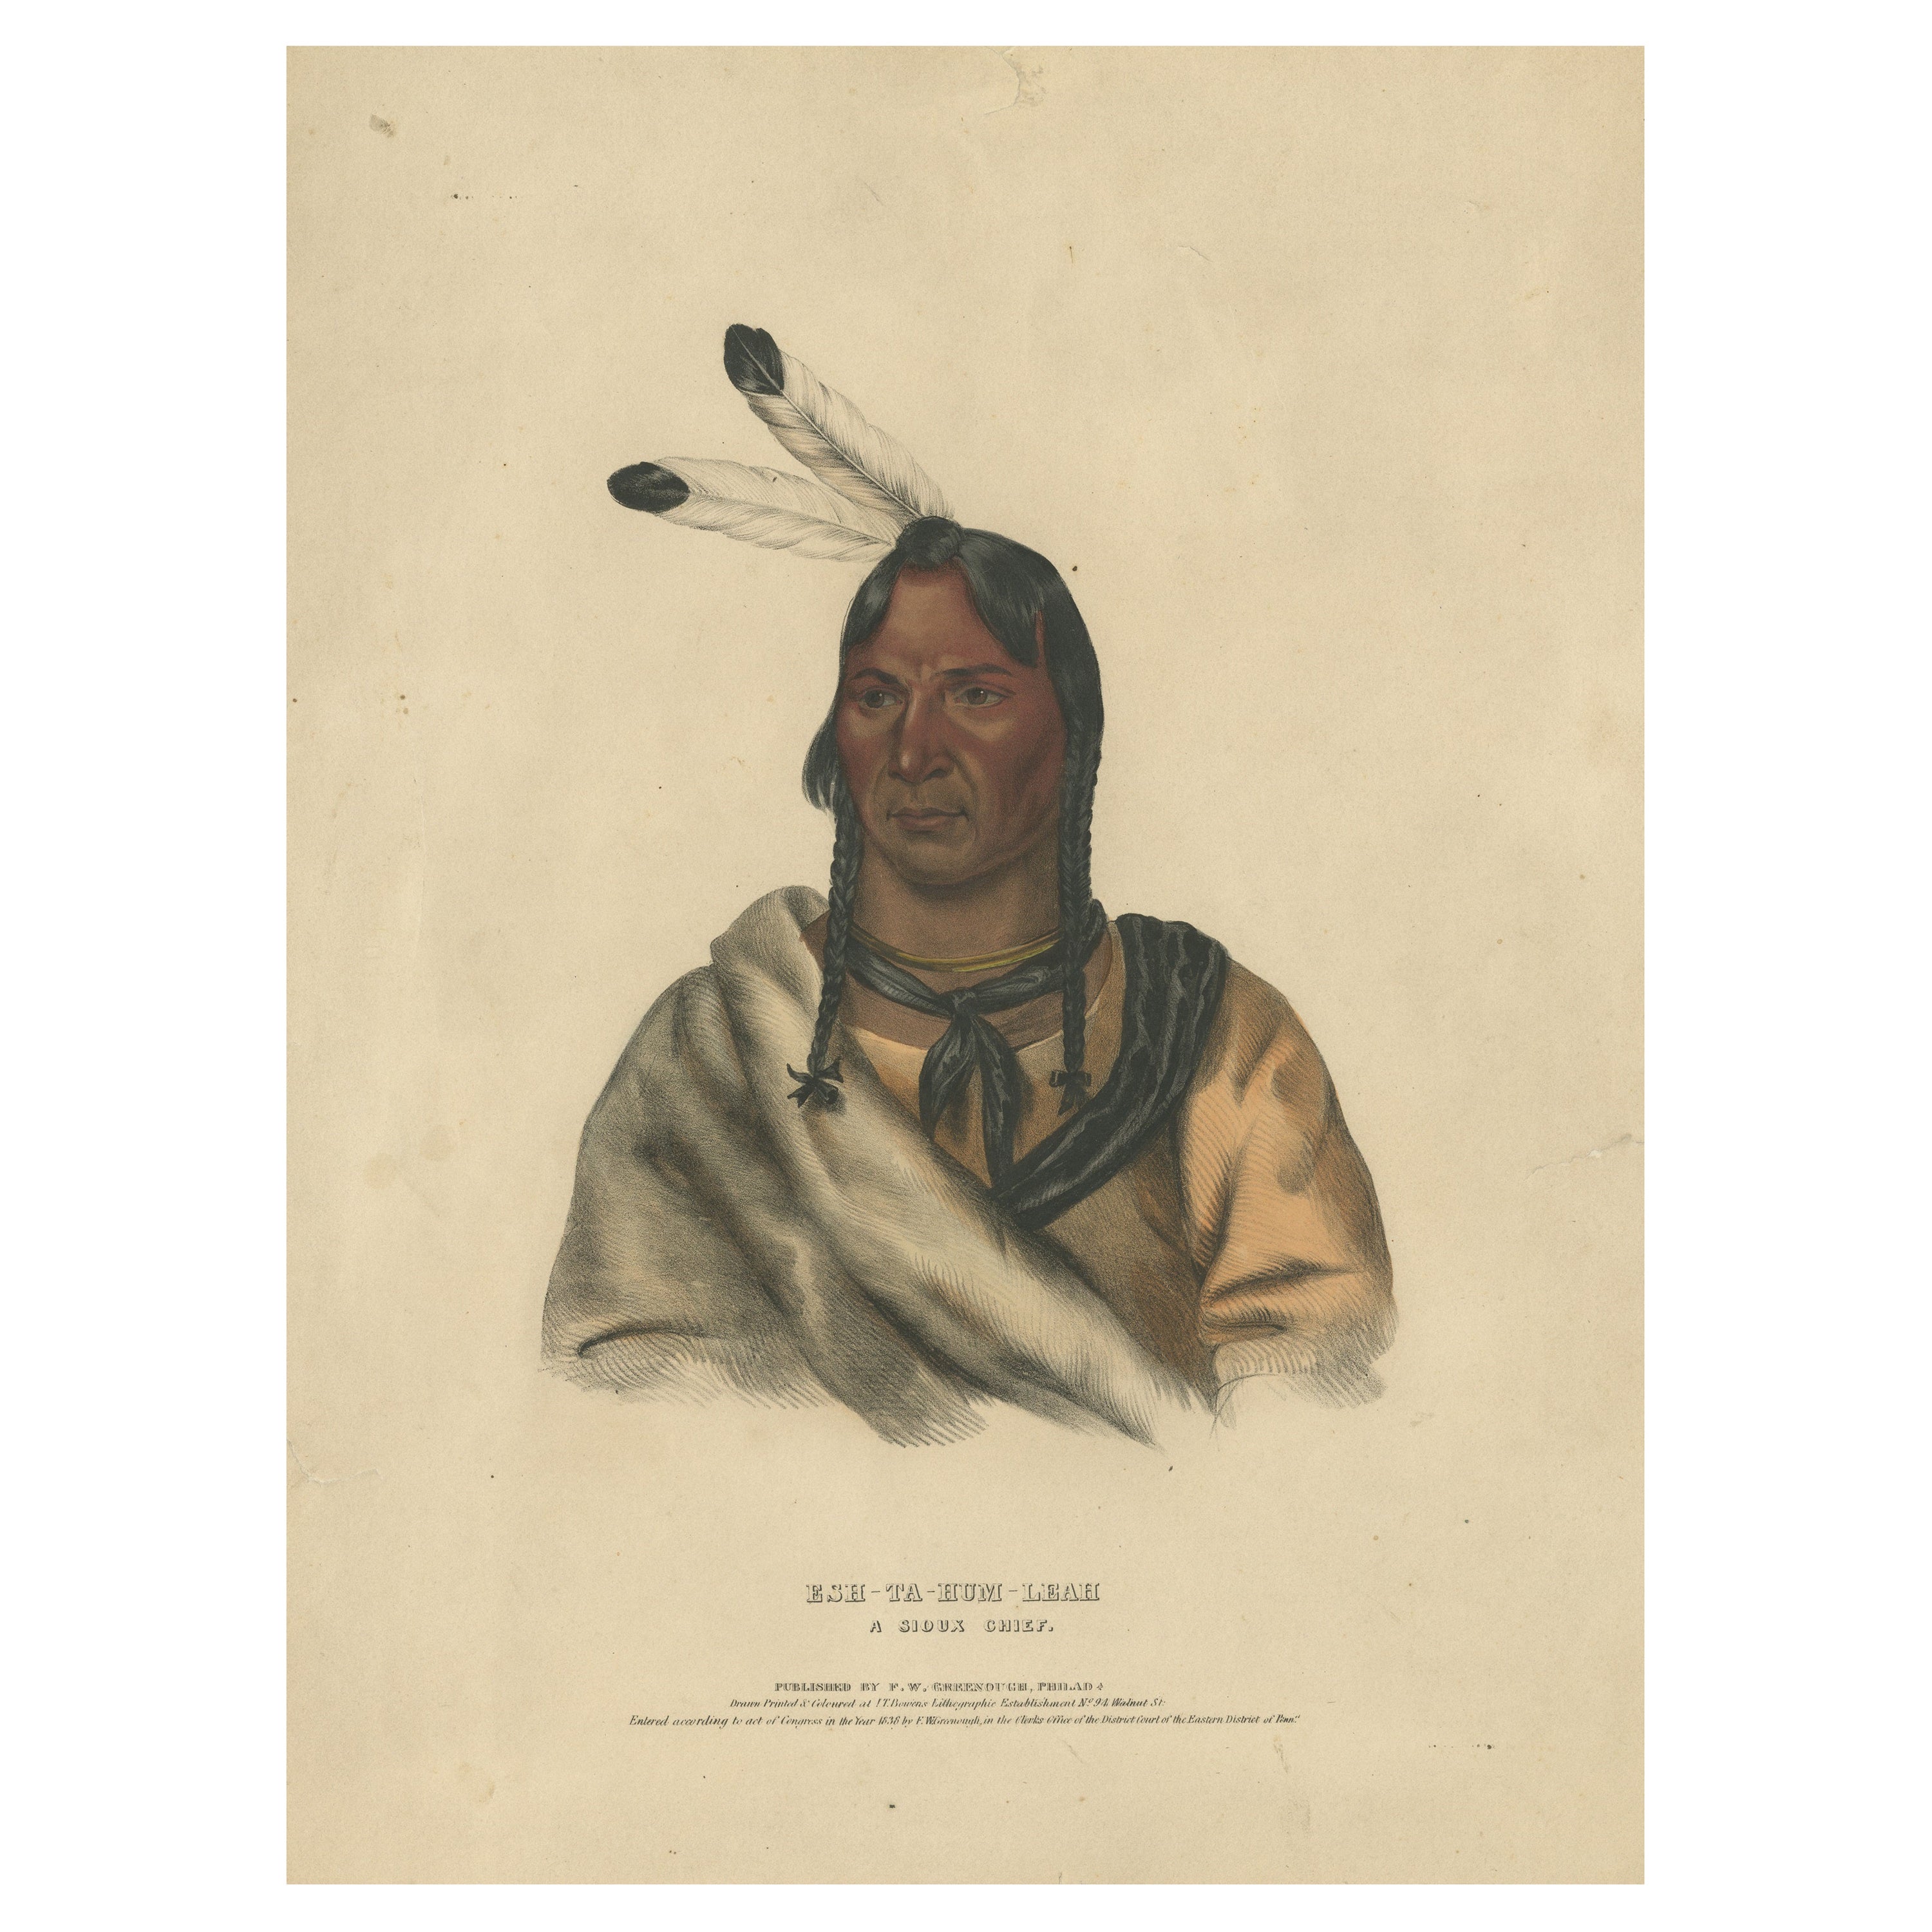 Large Antique Print of Esh-Ta-Hum-Leah, a Sioux Chief, circa 1838